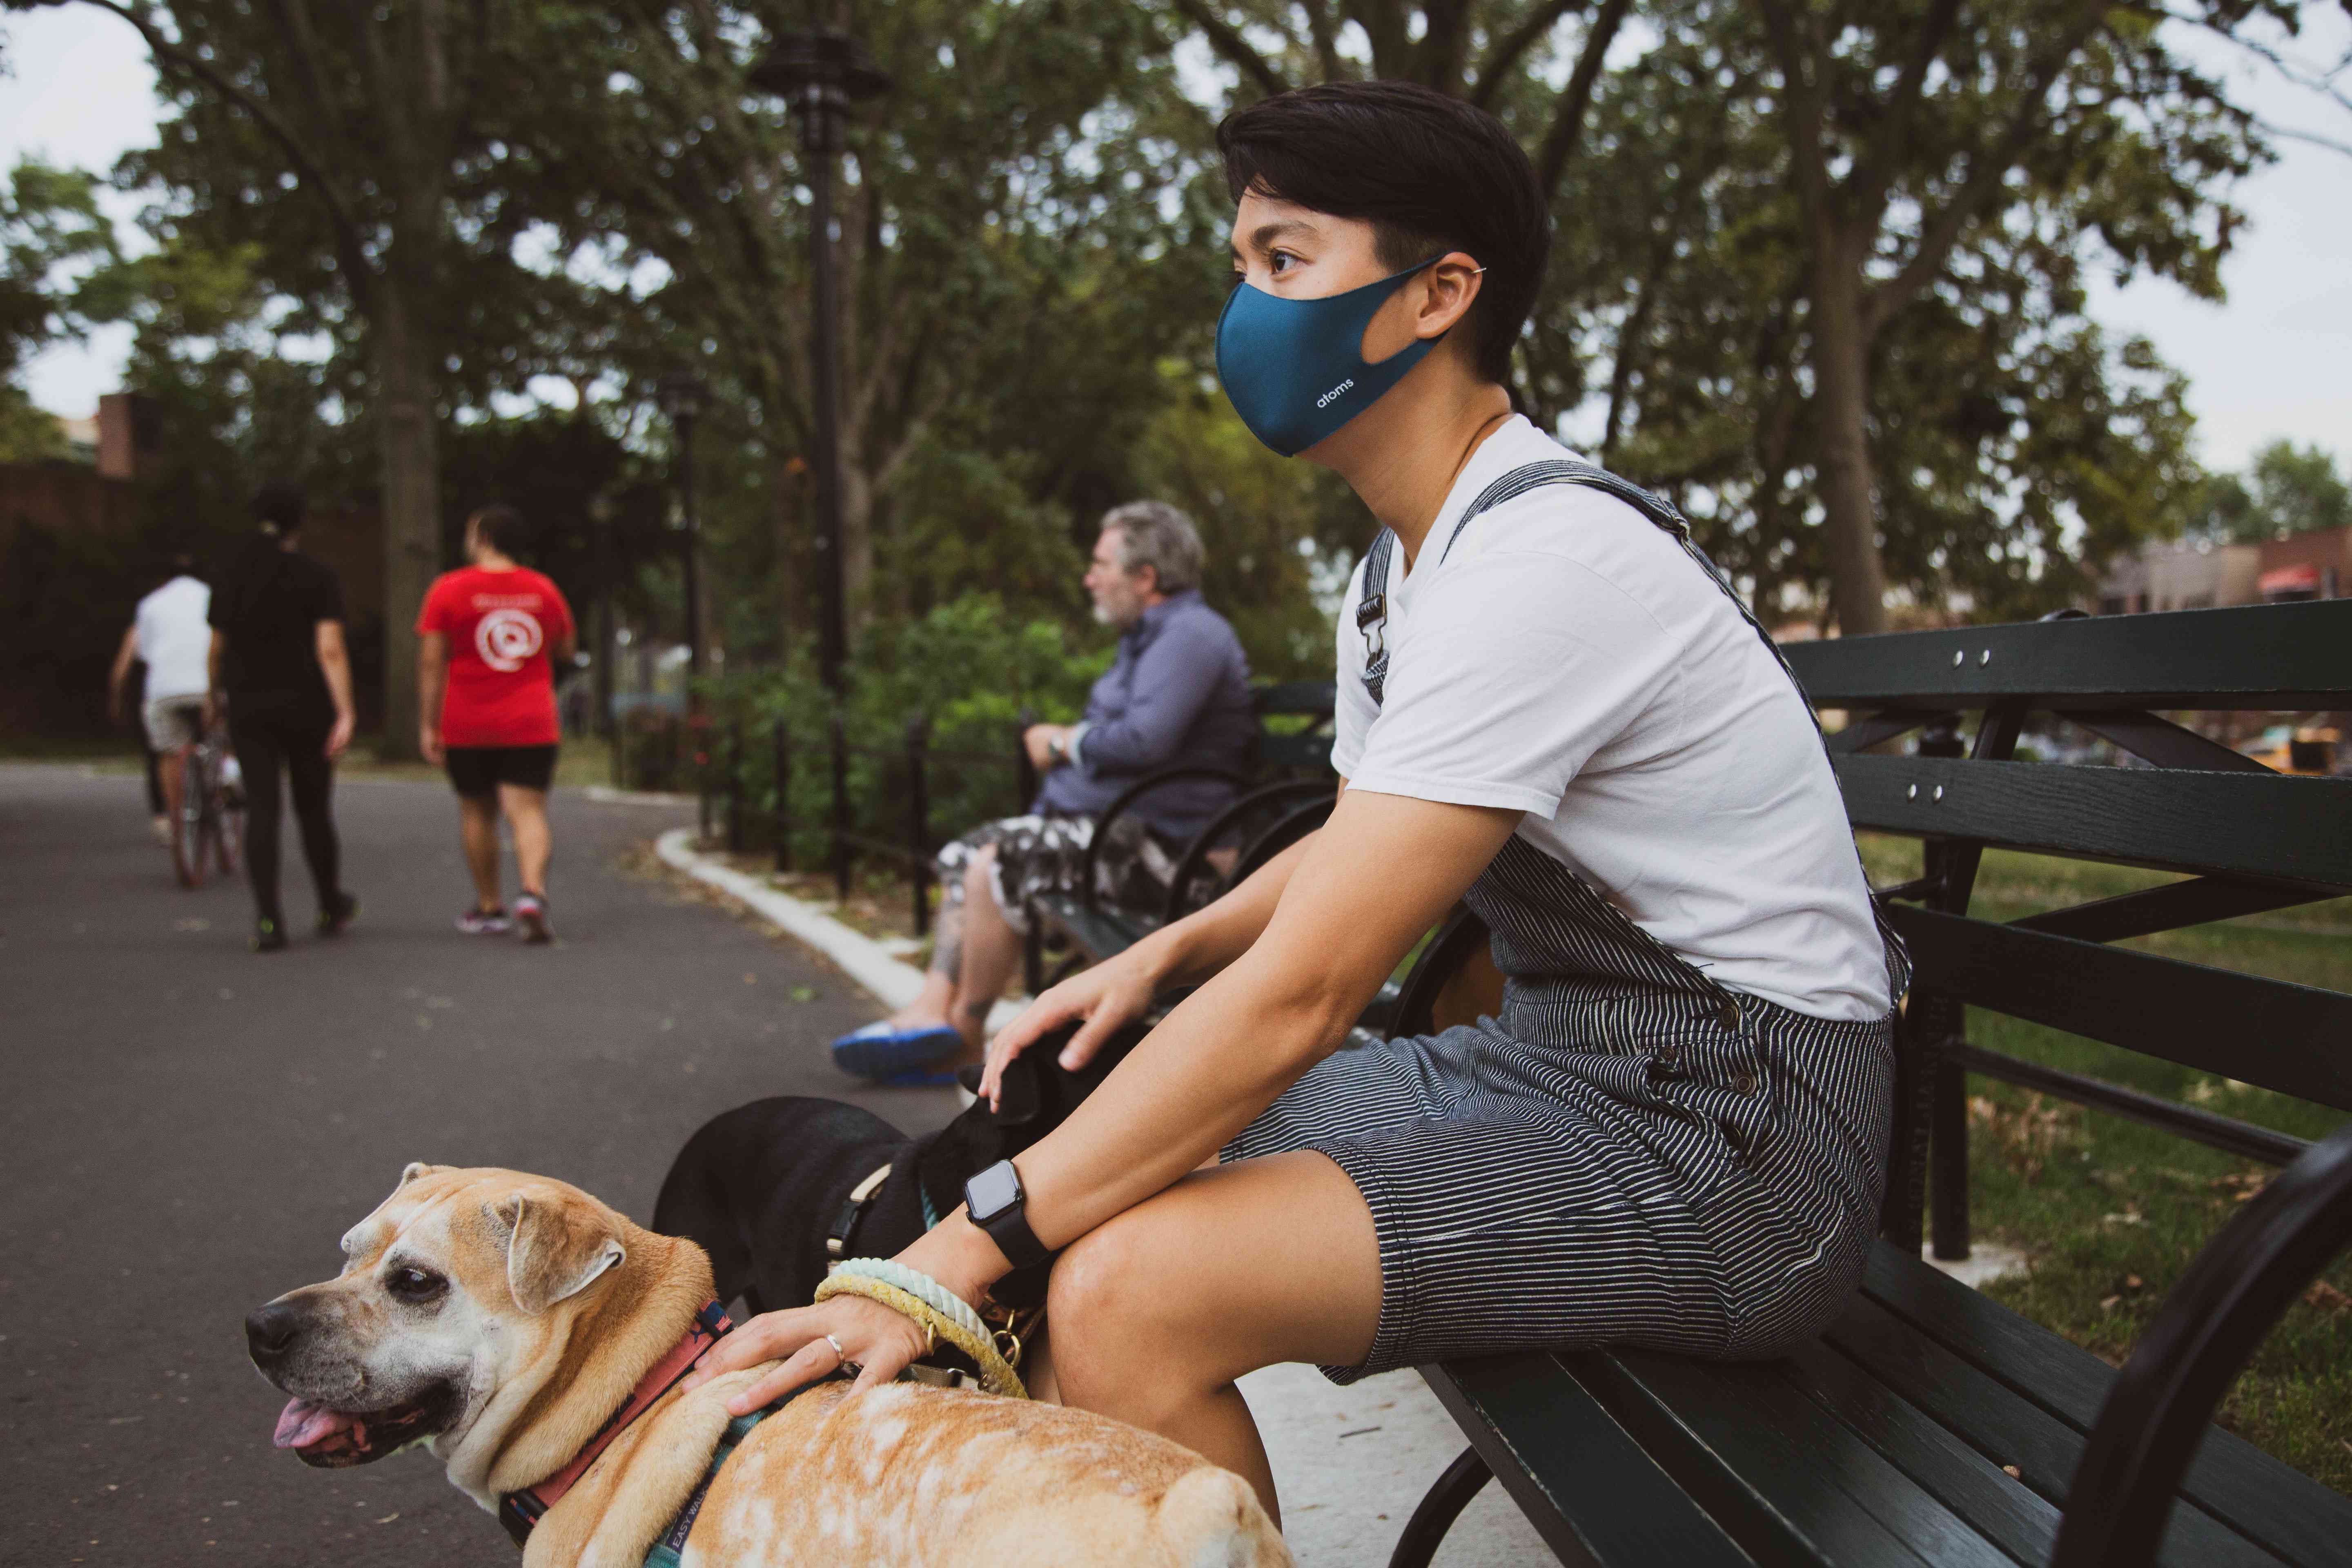 Pessoa mascarada sentada em um banco de parque com um cachorro.